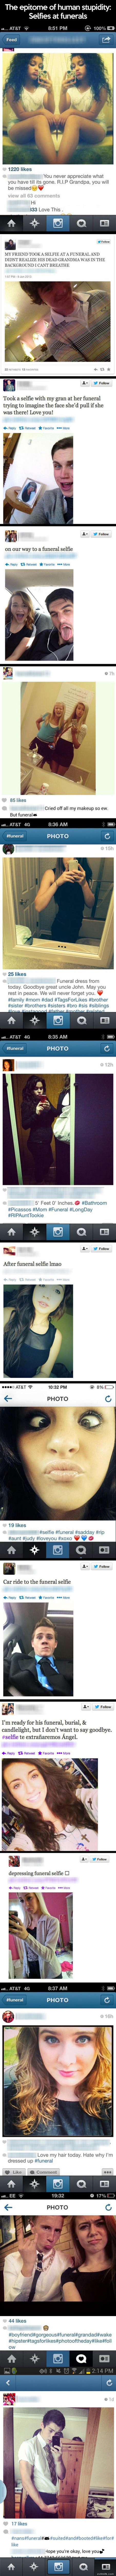 Funeral Selfies